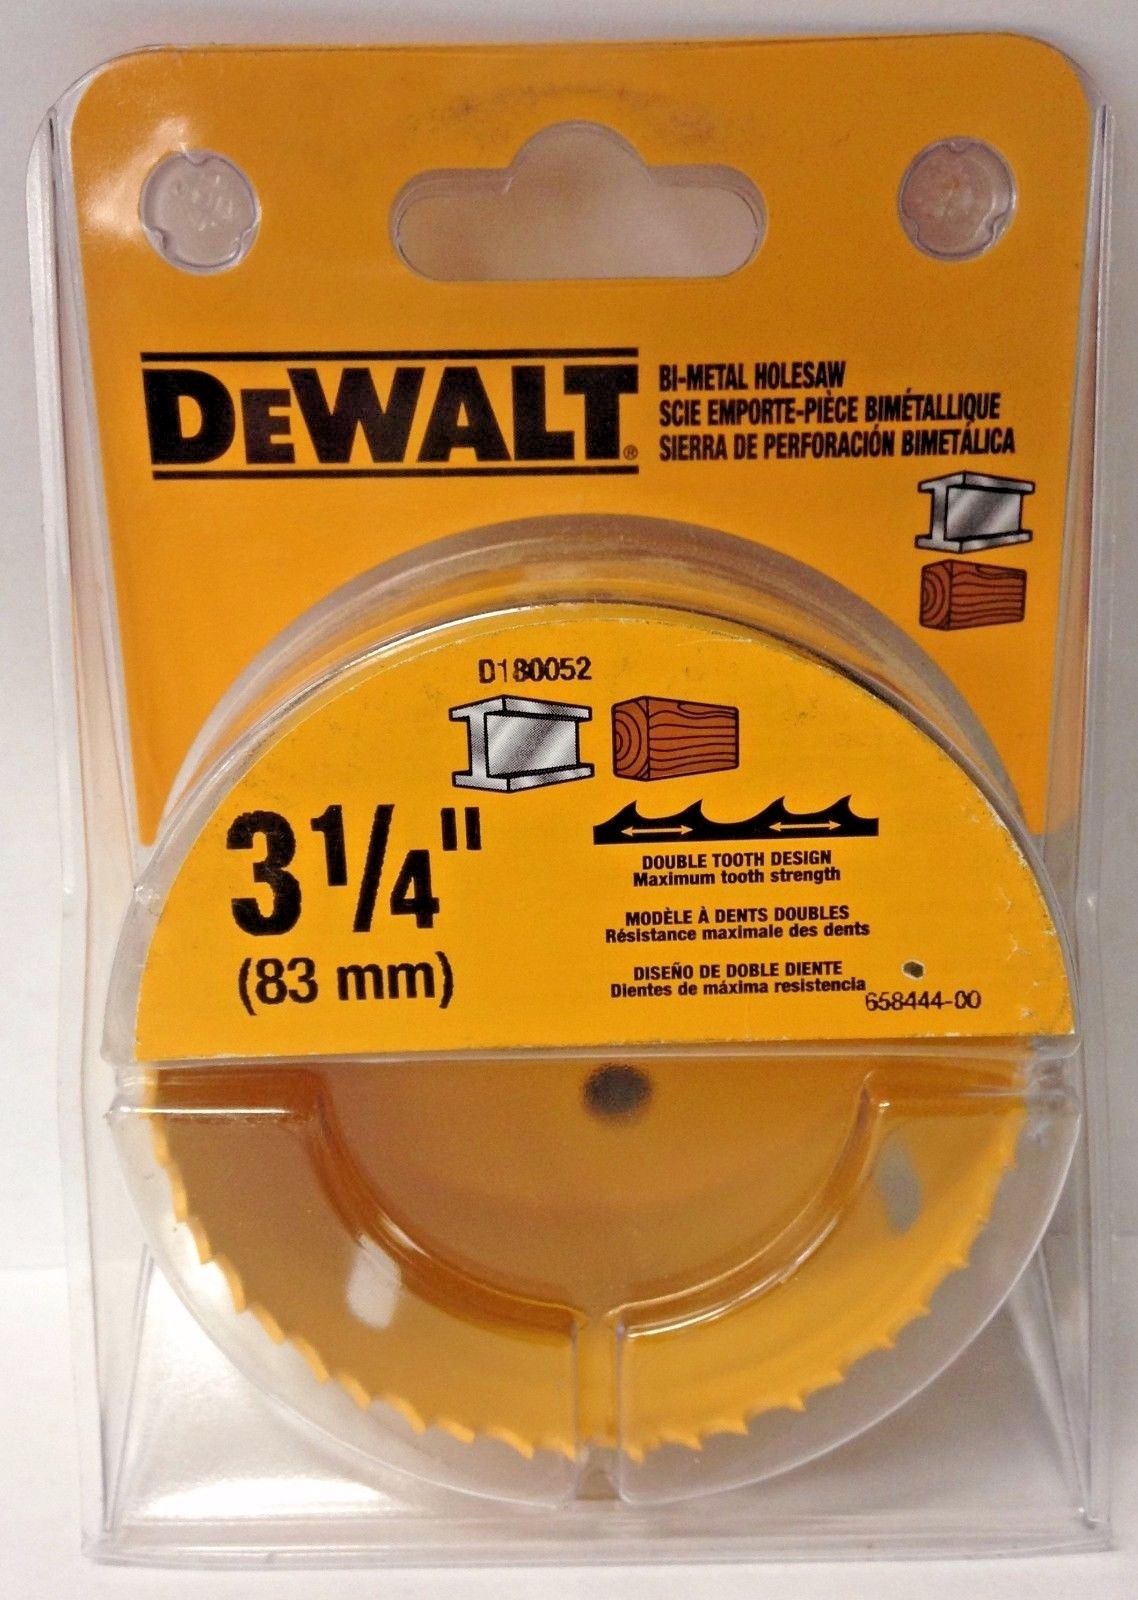 Dewalt D180052 3-1/4" Bi-Metal Hole Saw USA